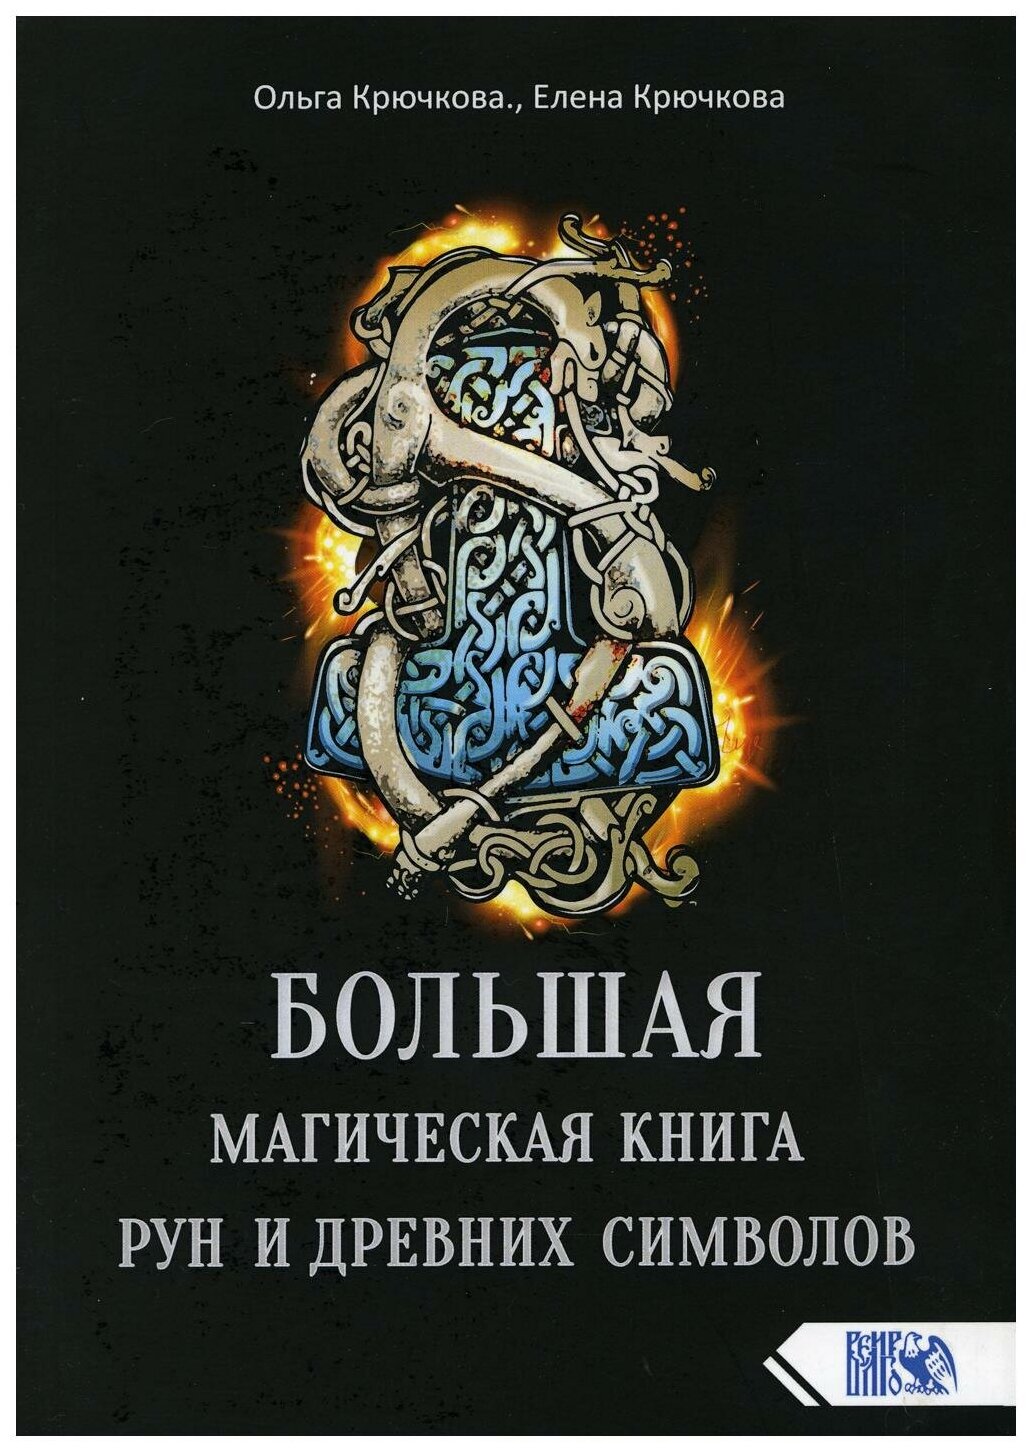 Большая магическая книга рун и древних символов - фото №1